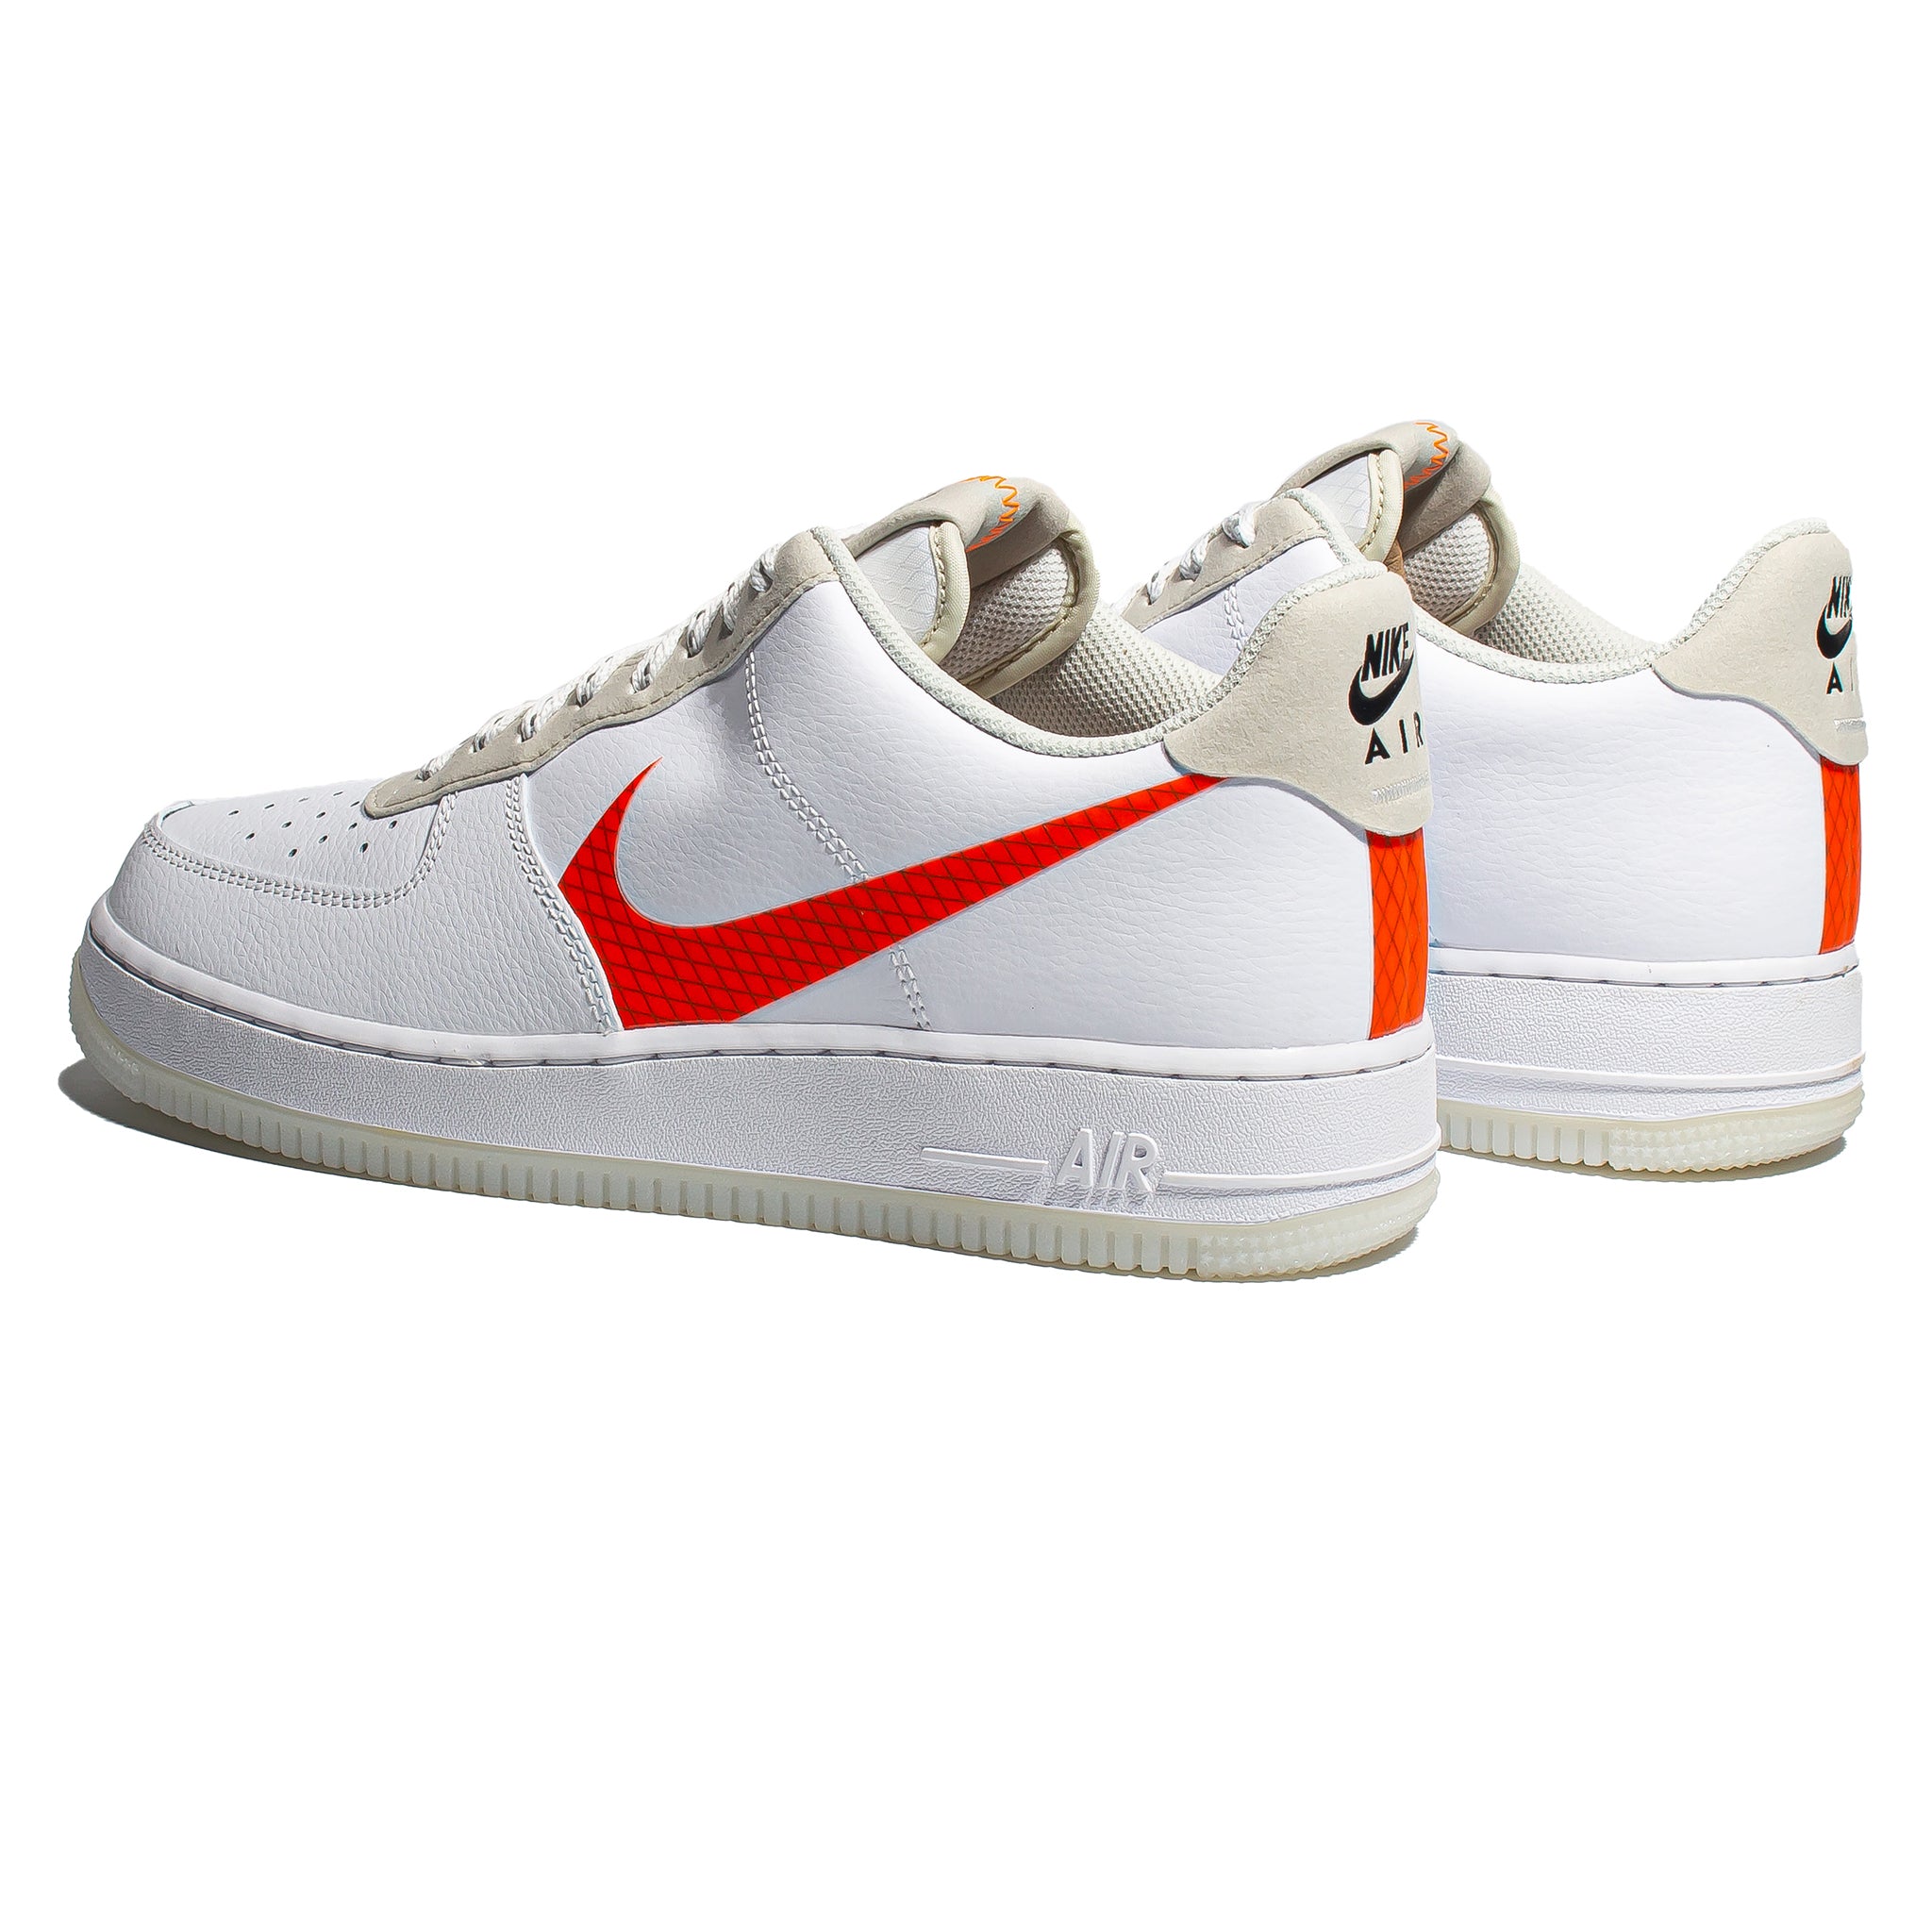 Nike Force 1 Toddler LV8 3 White/Total Orange-Summit White - CD7415-100